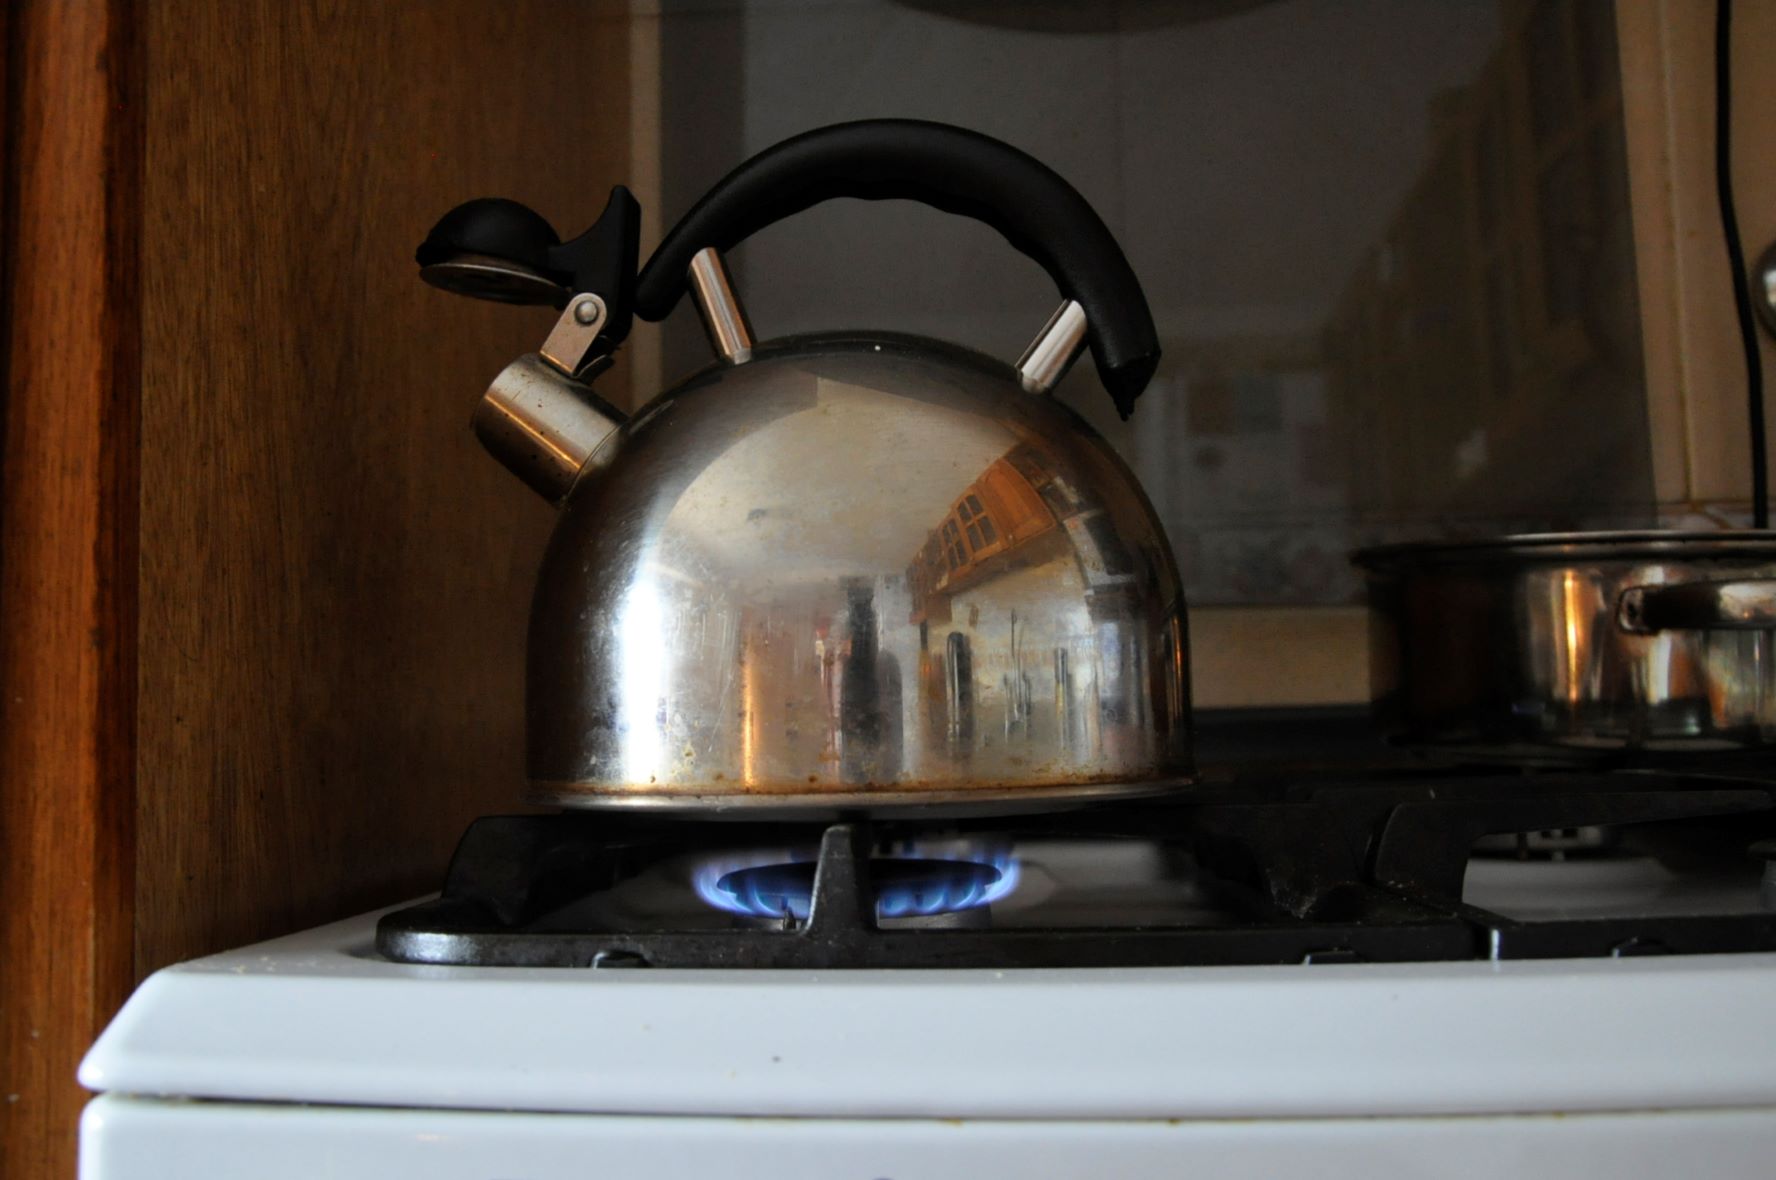 Durante esta madrugada la baja presión de gas afectó a varios hogares jacobaccinos. Foto: José Mellado.